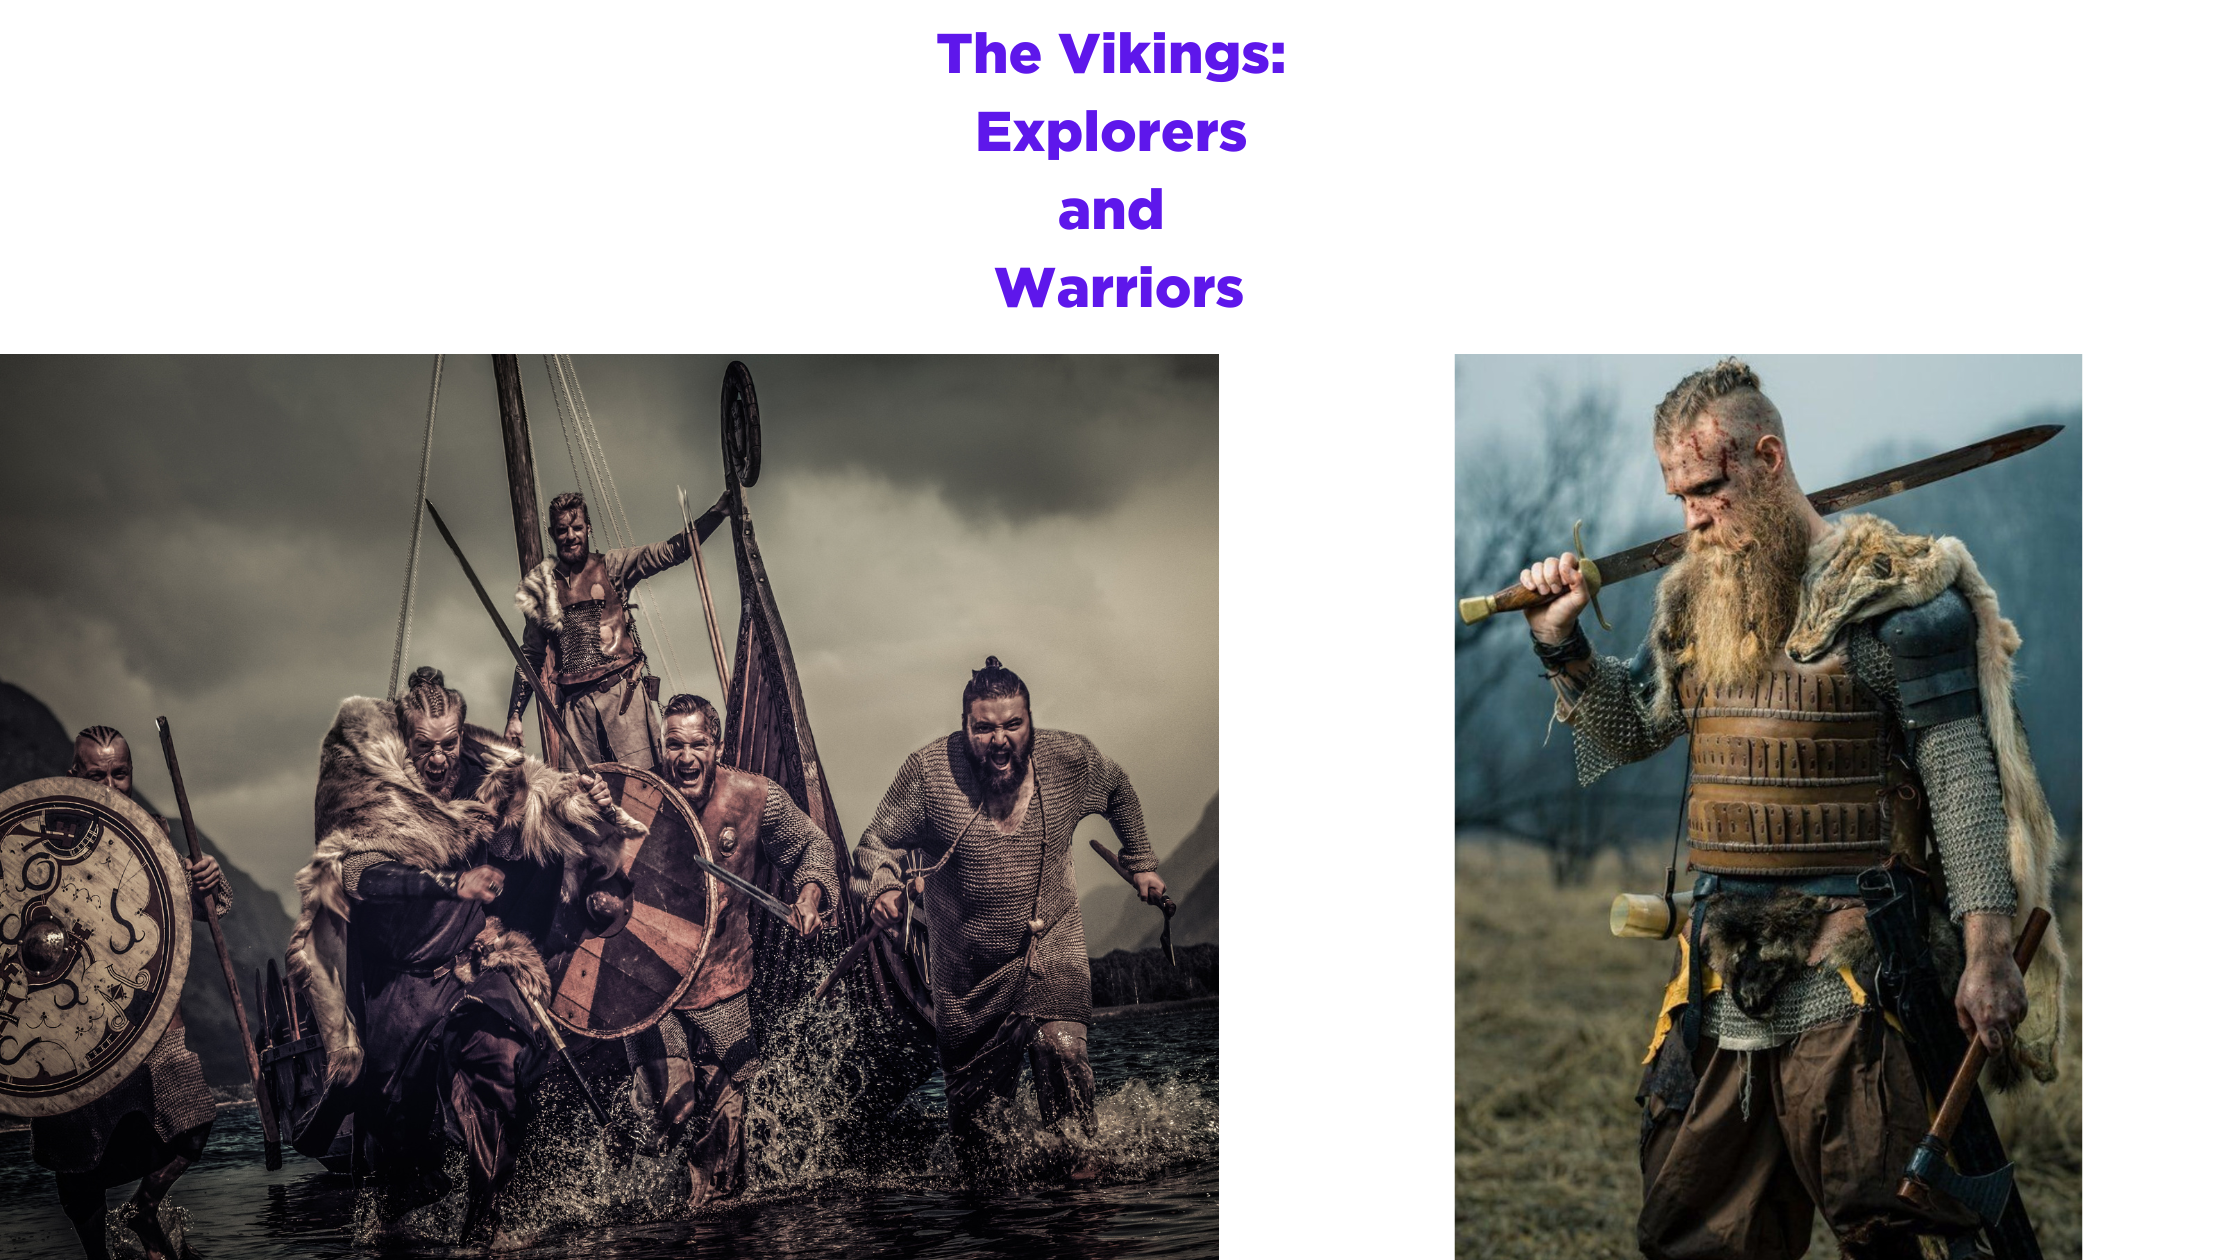 The Vikings: Explorers and Warriors